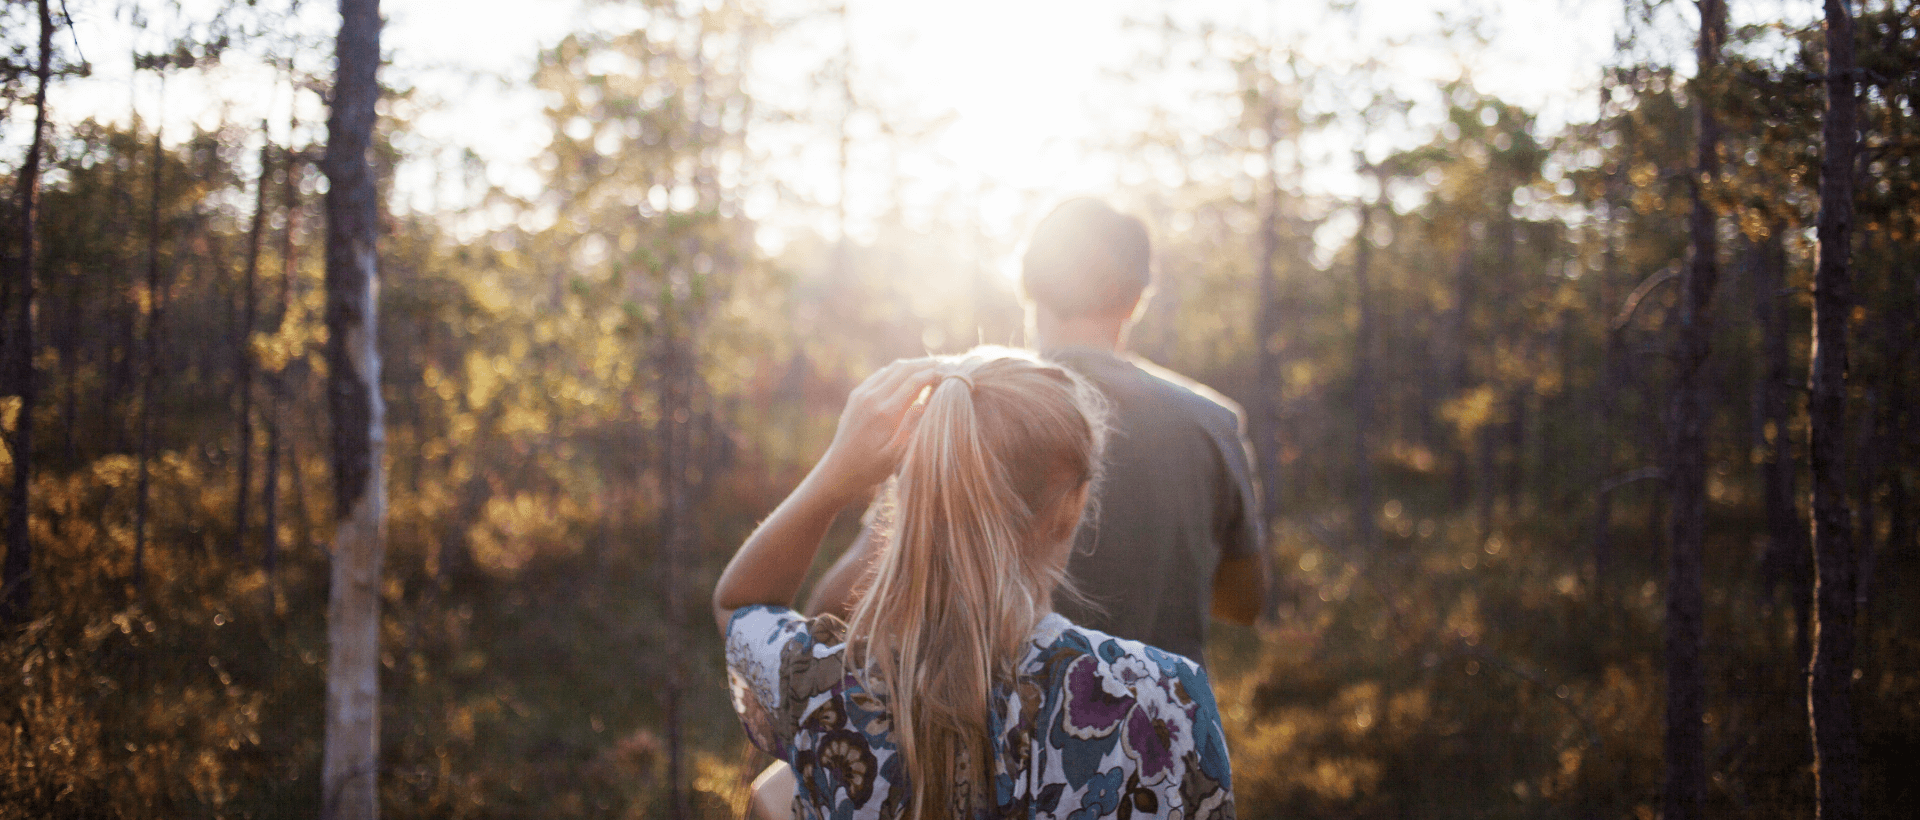 Een jonge vrouw volgt een jonge man in het bos, zomerse sfeer, zoninval, achteraanzicht